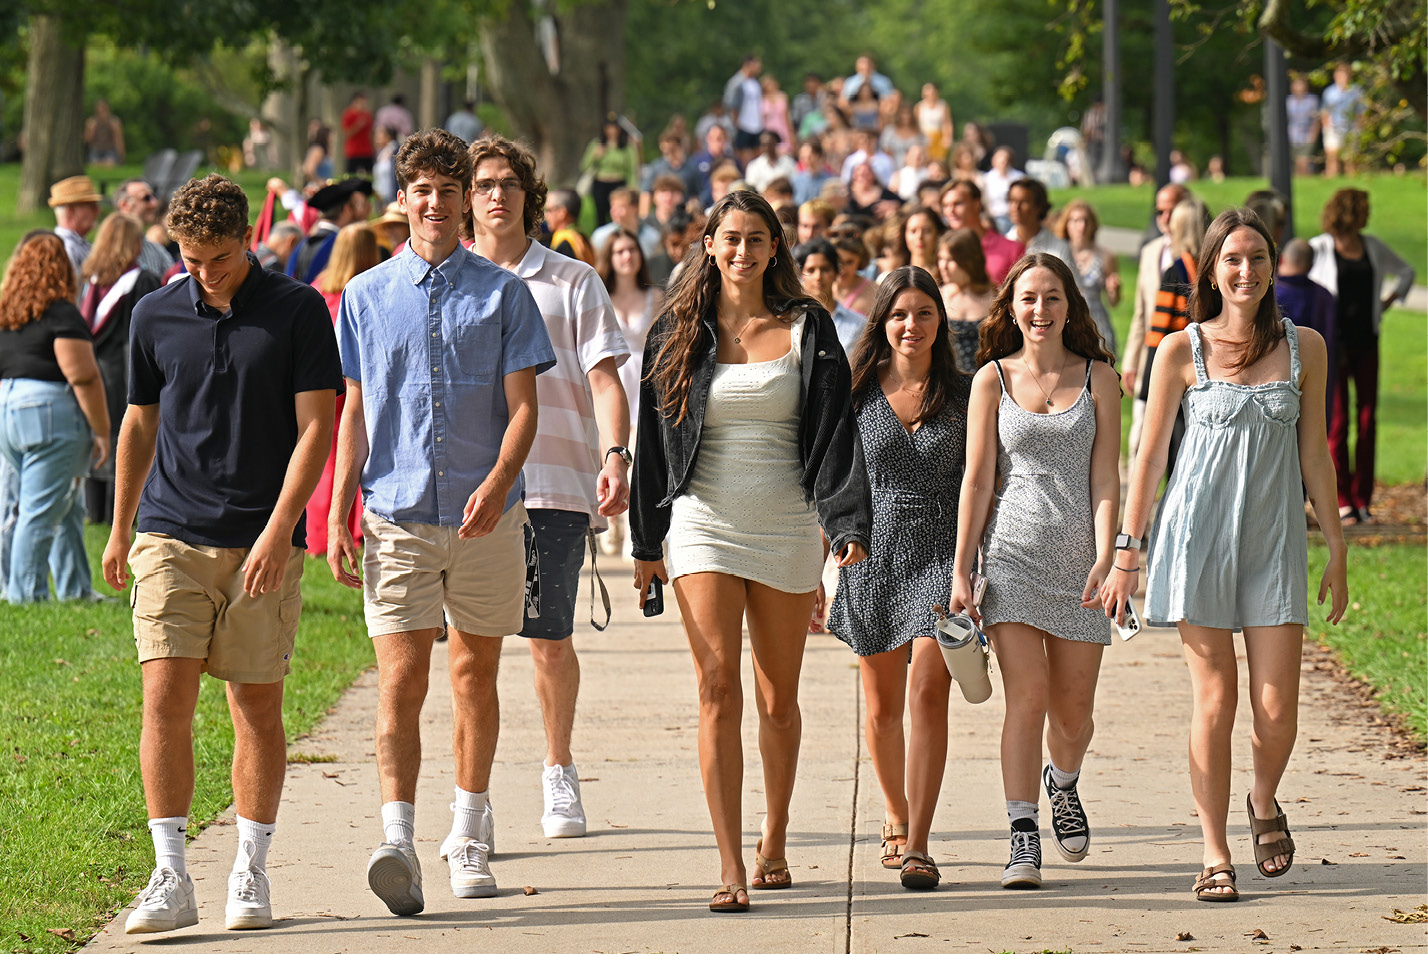 Students walking at Convocation